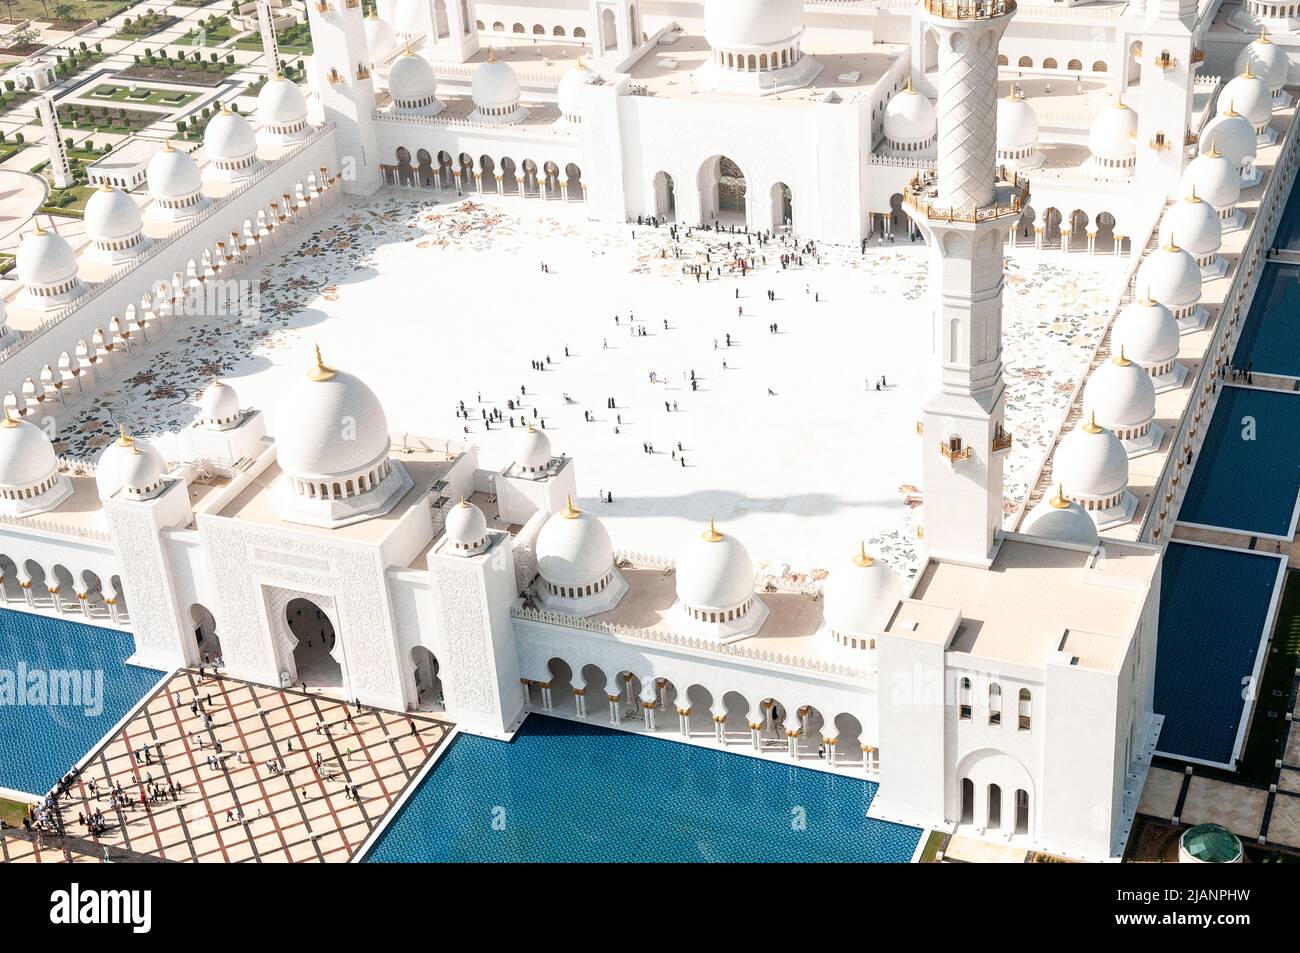 Foto aeree esclusive di Abu Dhabi e della Grande Moschea dello Sceicco Zayed. Prospettiva unica della più grande moschea degli Emirati Arabi Uniti. Turismo religioso. Islam. Foto Stock